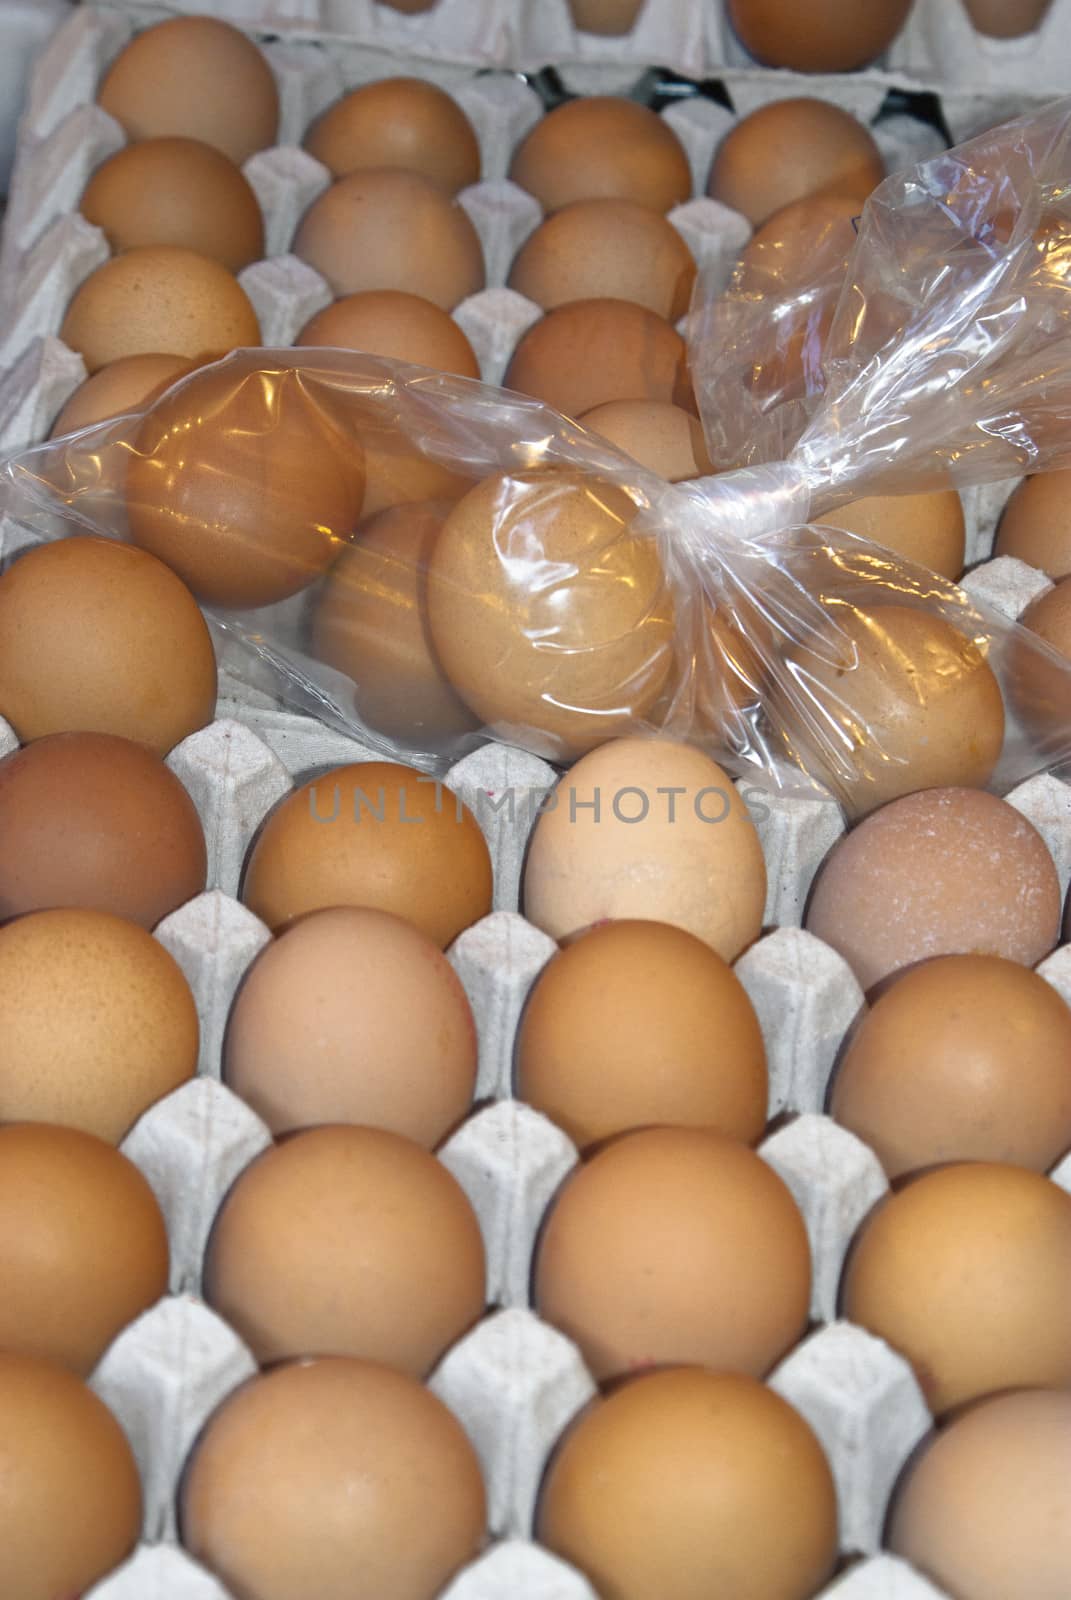 eggs for sale at a market by gandolfocannatella